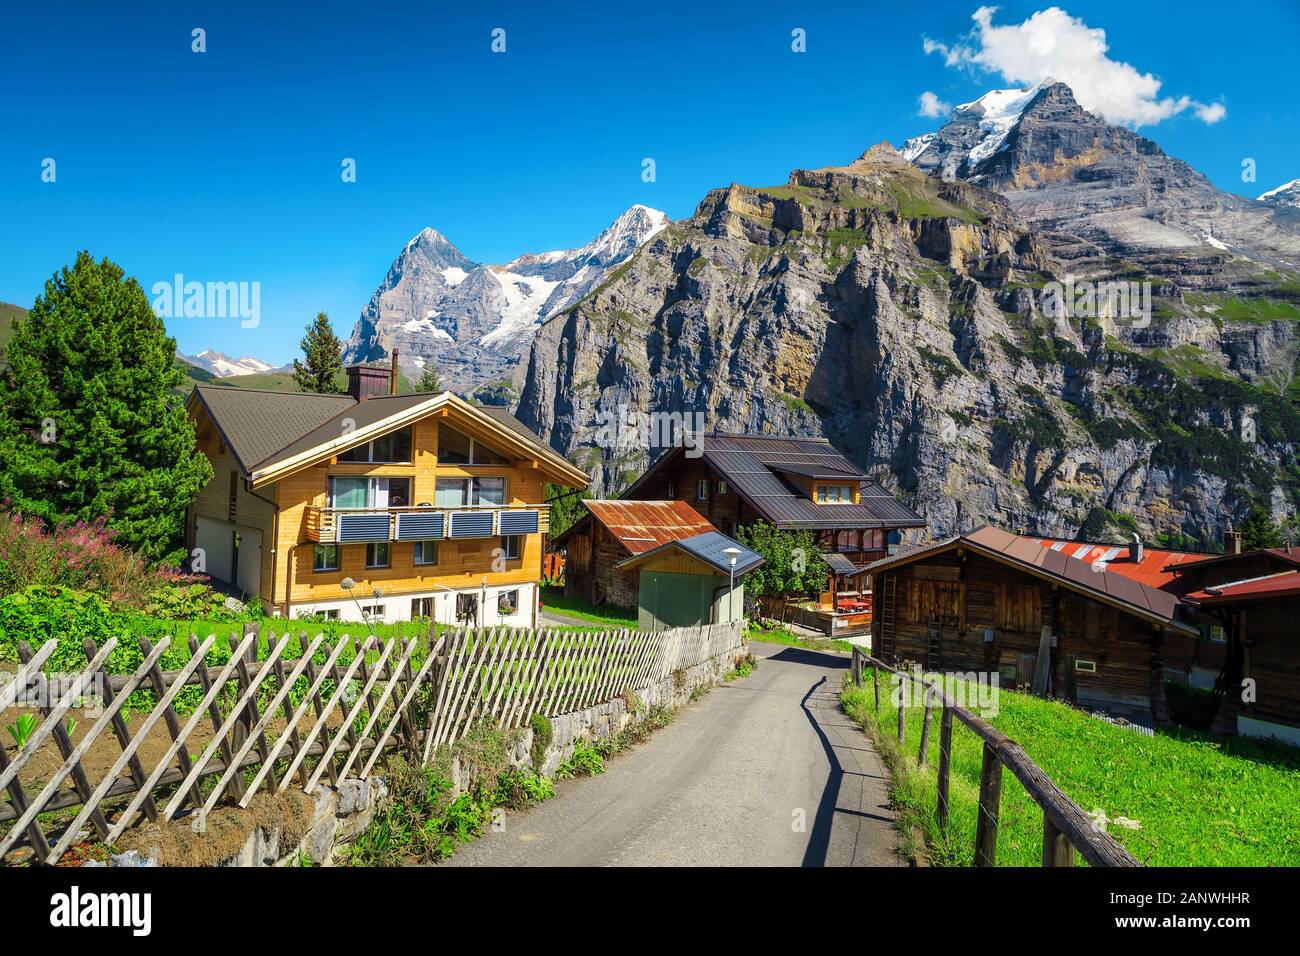 Station de montagne fantastique avec des maisons en bois alpin traditionnel et de hautes montagnes enneigées en arrière-plan, Murren, Oberland Bernois, Suisse, Europe Banque D'Images